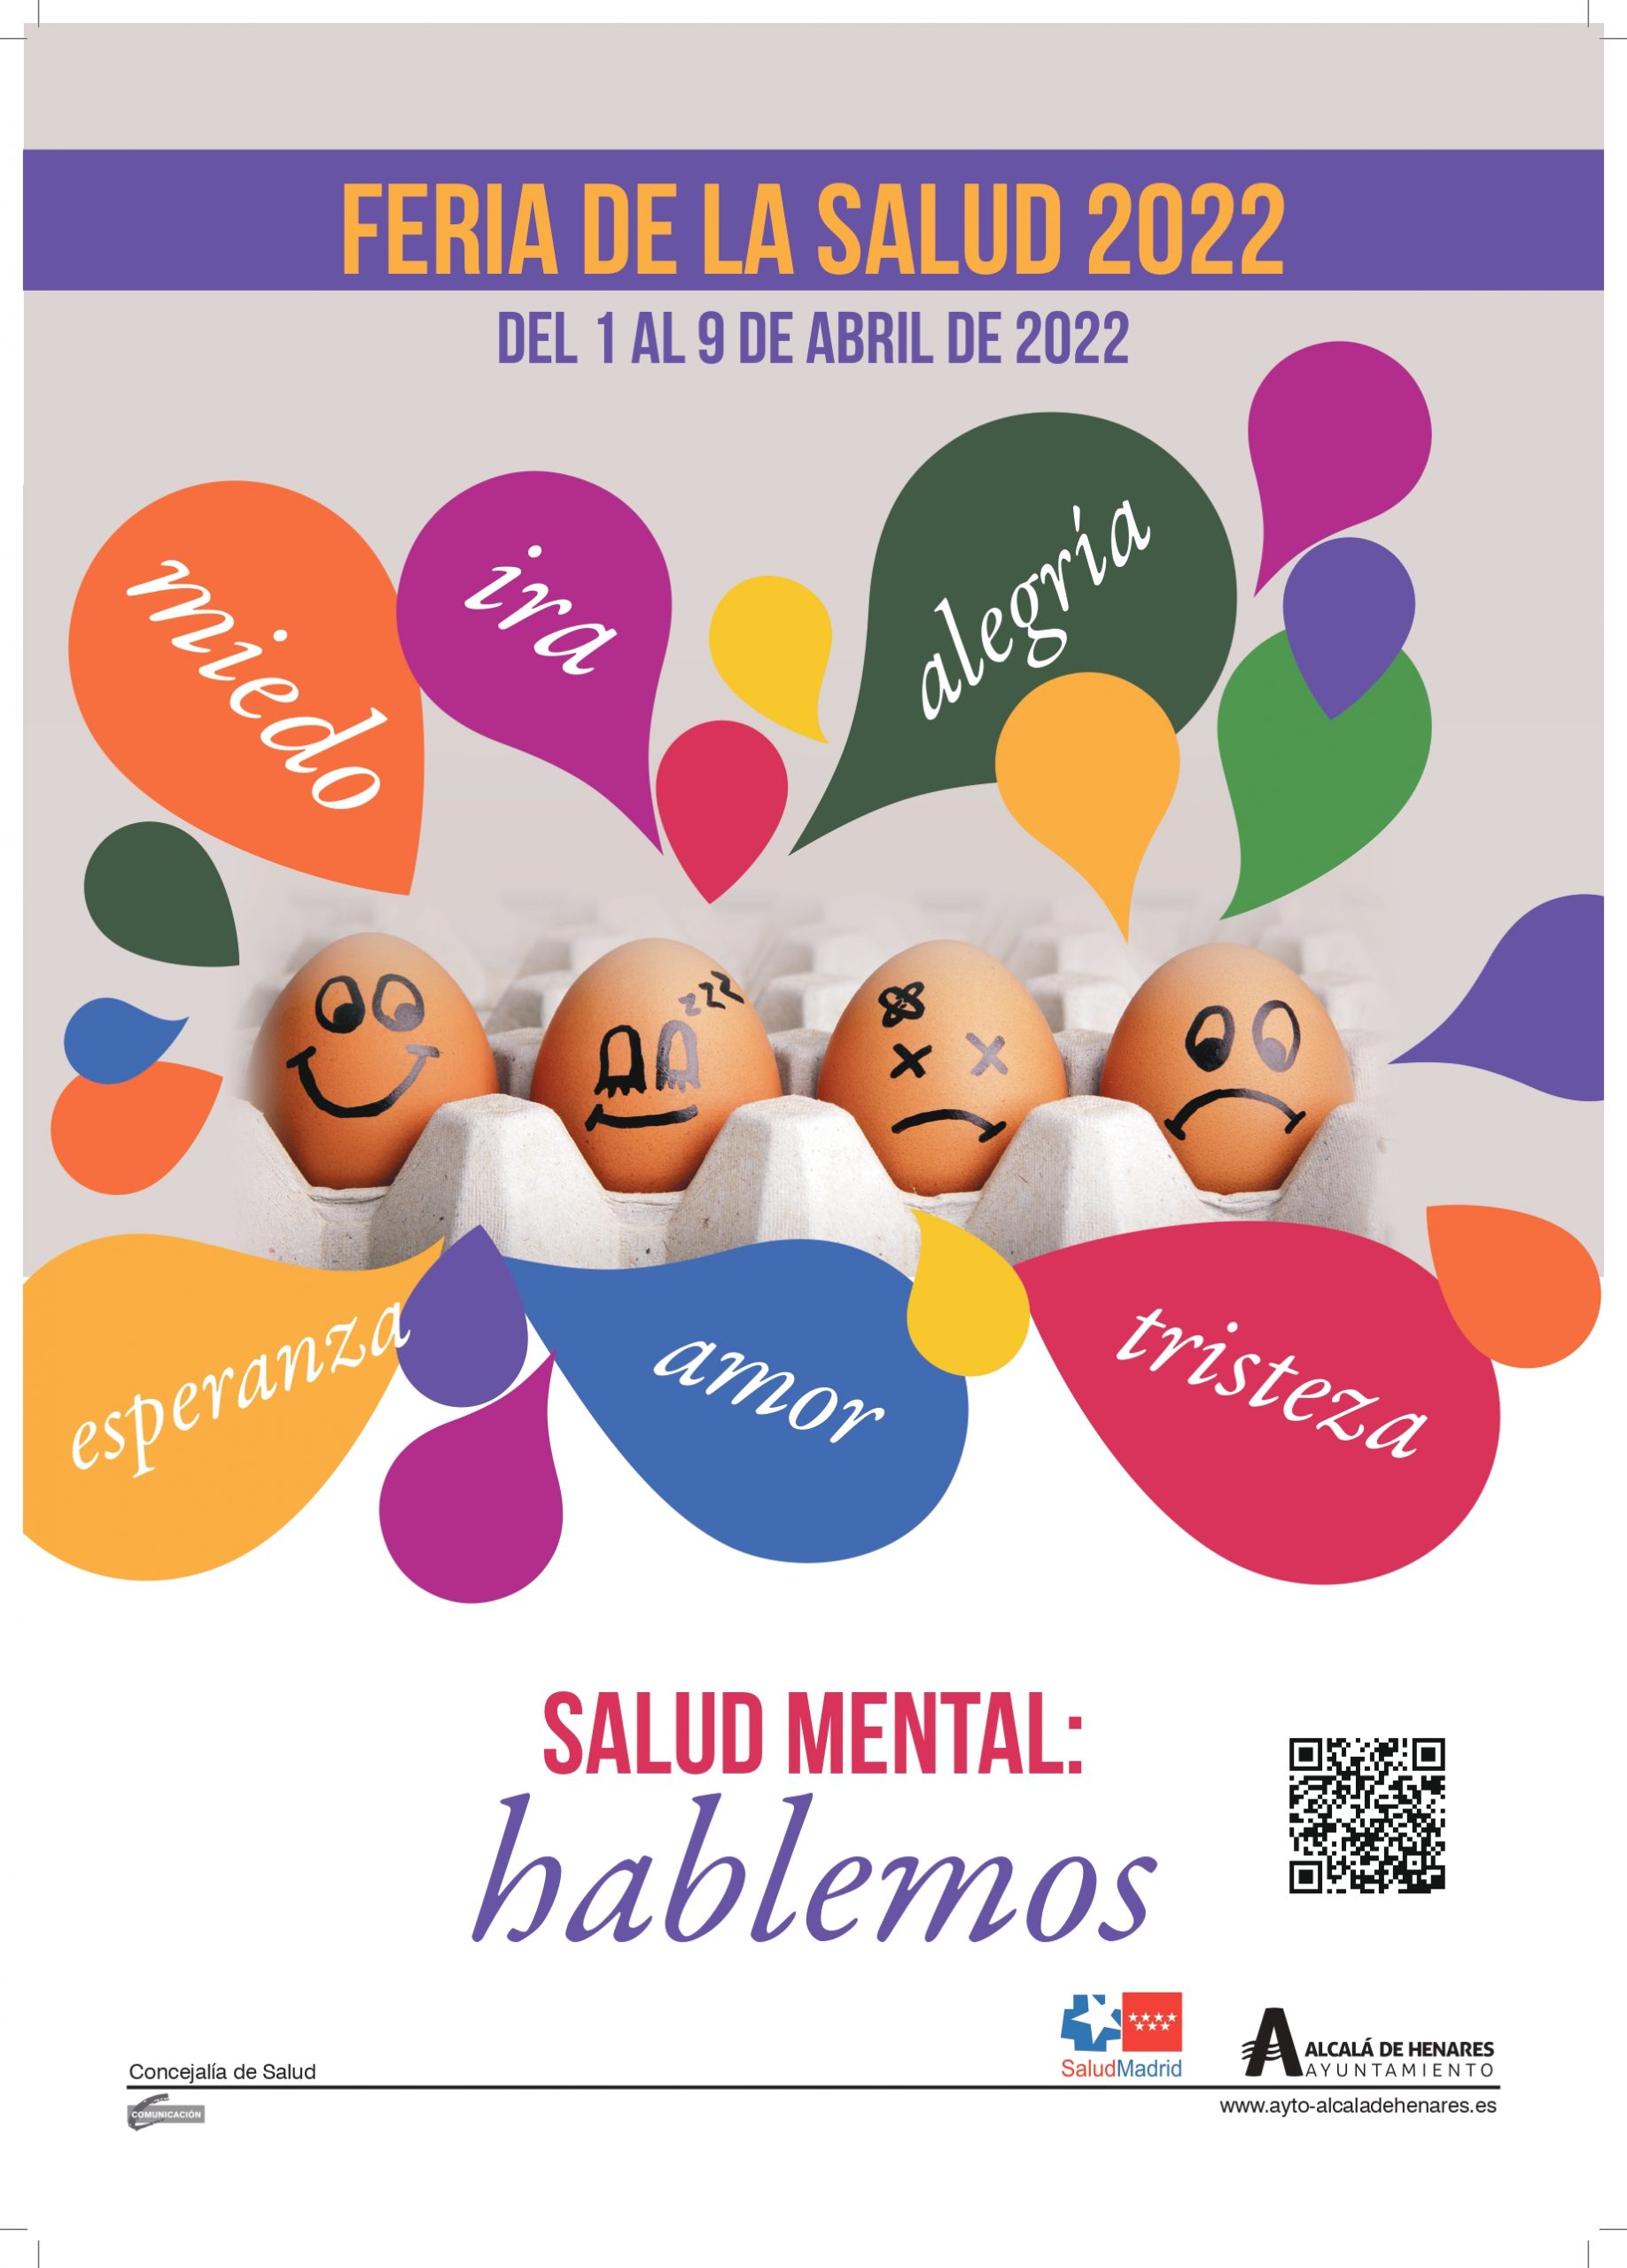 Alcalá de Henares celebrará la Feria de la Salud del 1 al 9 de abril